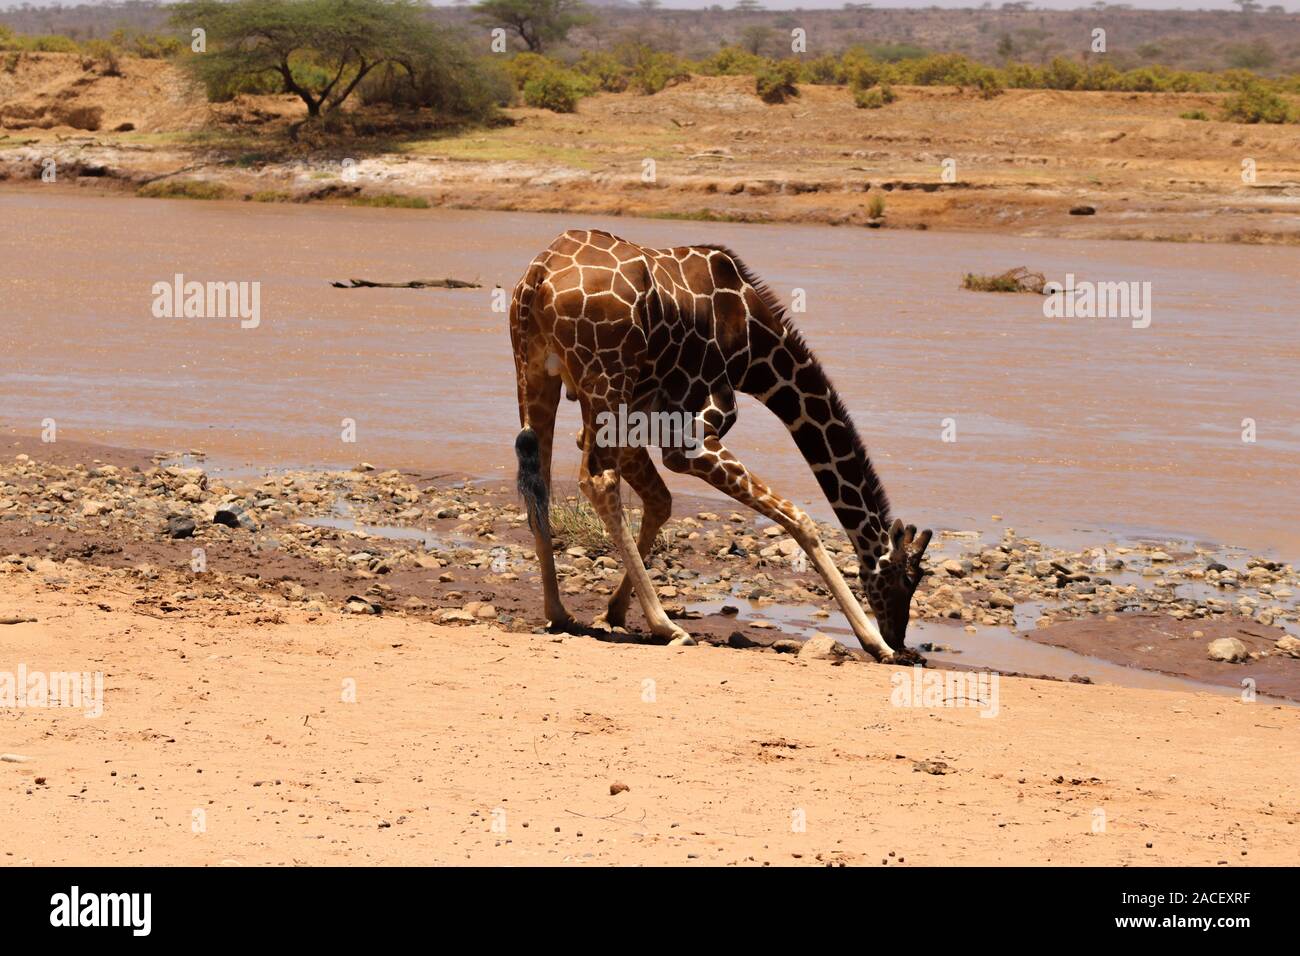 Eine Netzgiraffe, die sich biegt, um Wasser aus dem Fluss Ewaso Nyiro im heißen und trockenen Samburu National Reserve zu trinken. Stockfoto